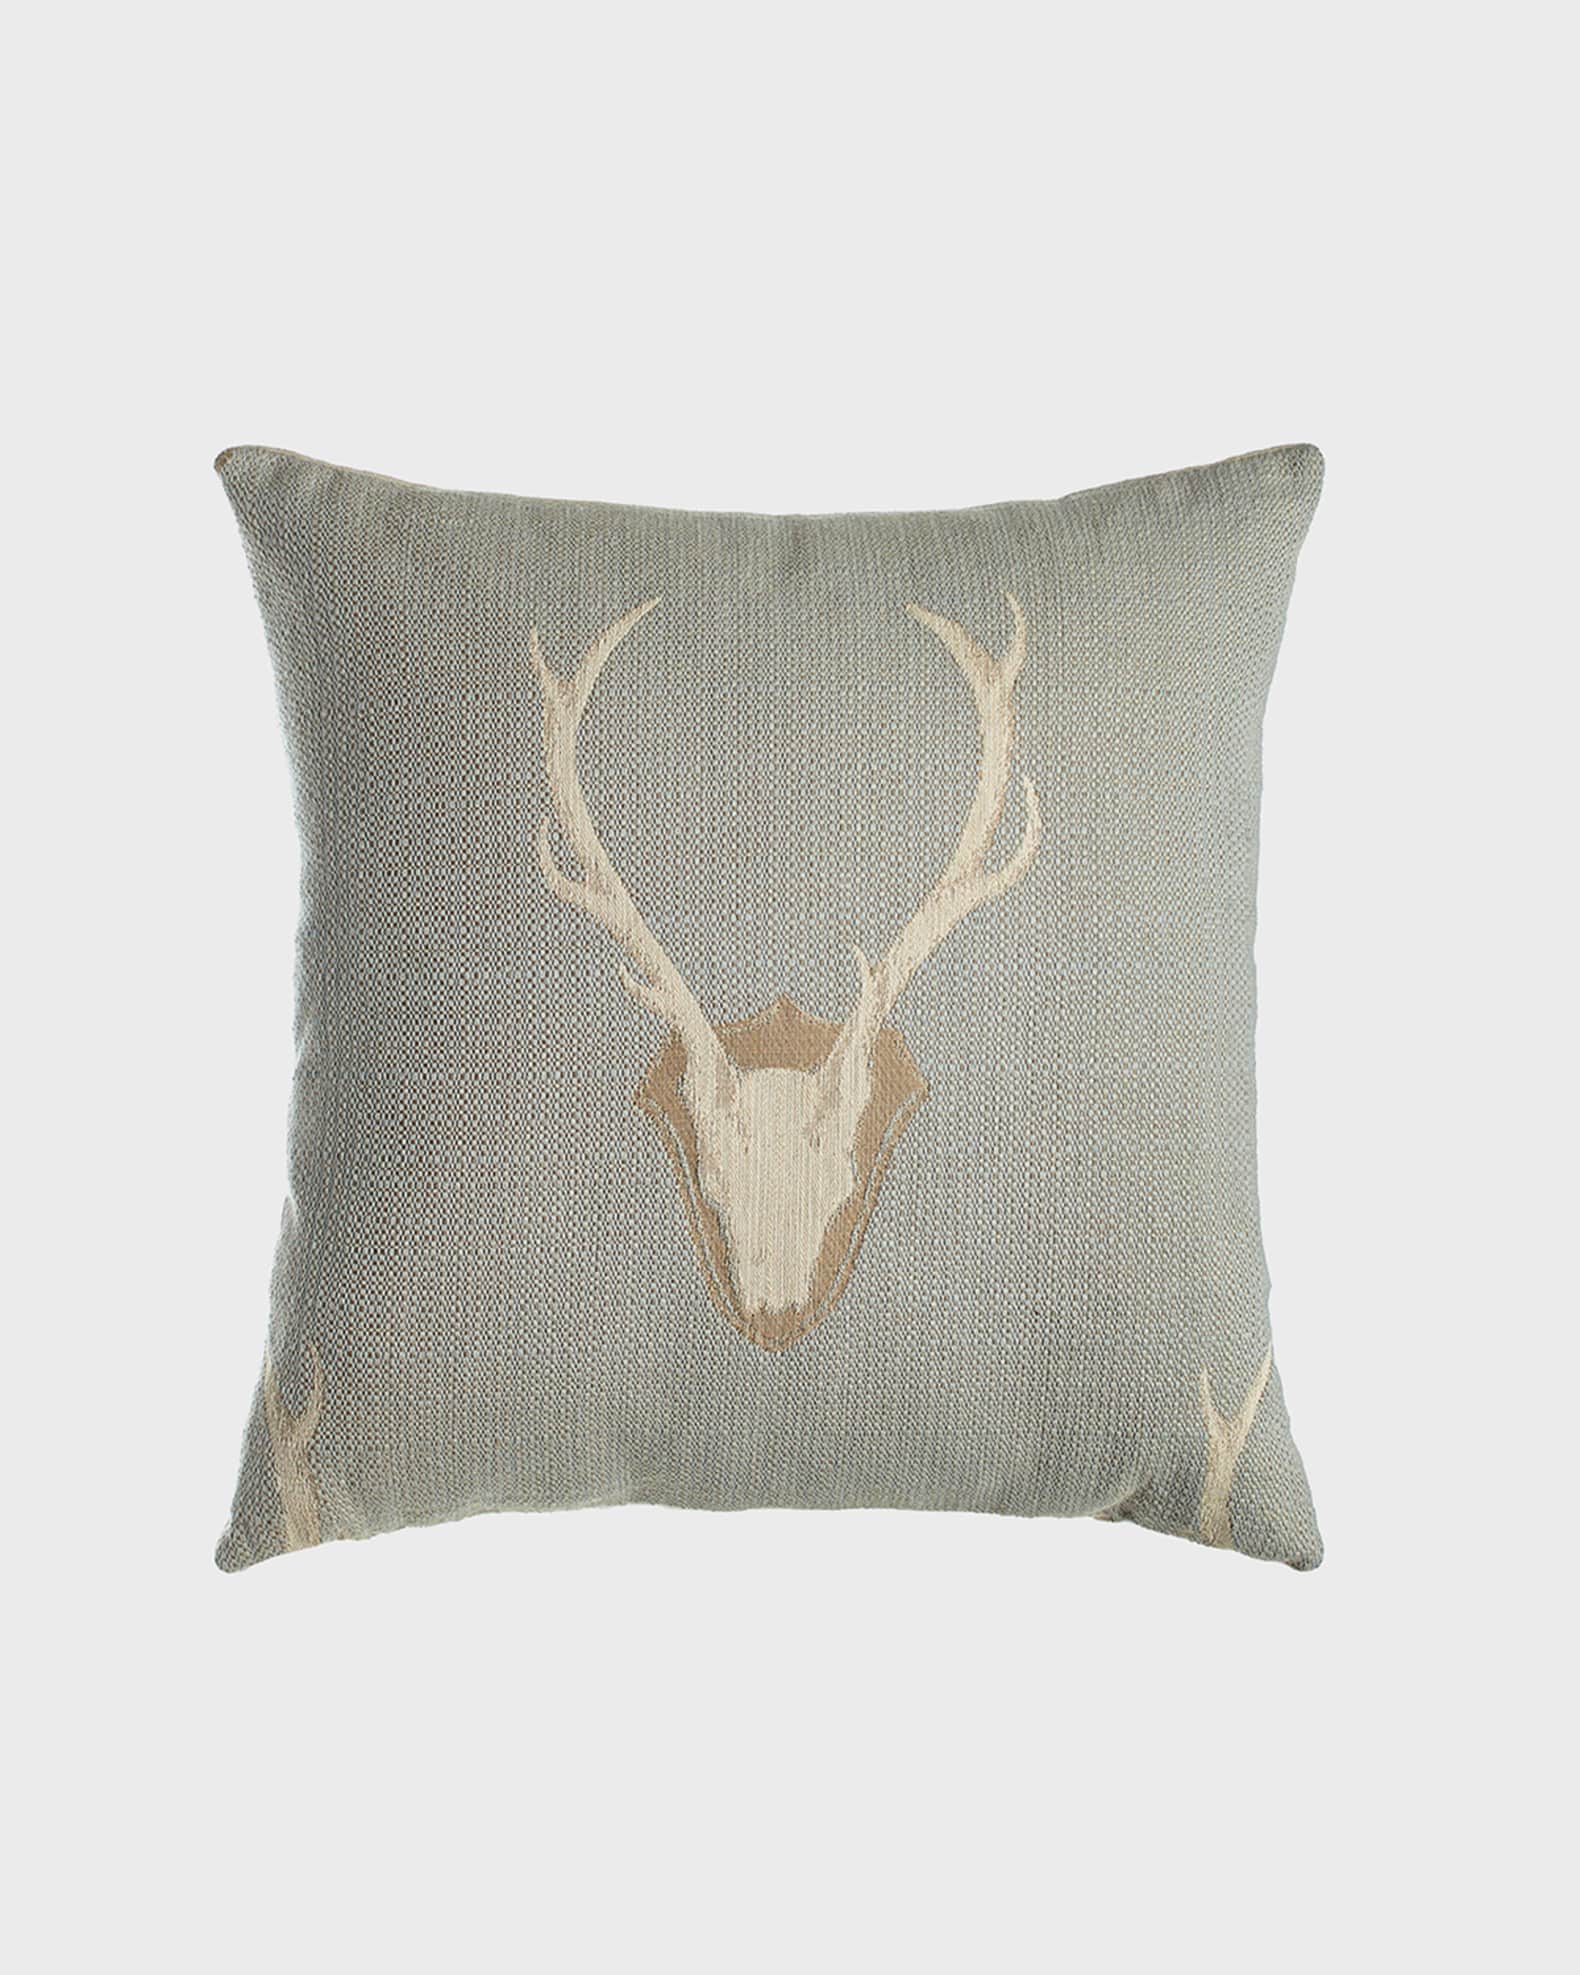 D.V. KAP Home Loren Deer Pillow | Neiman Marcus